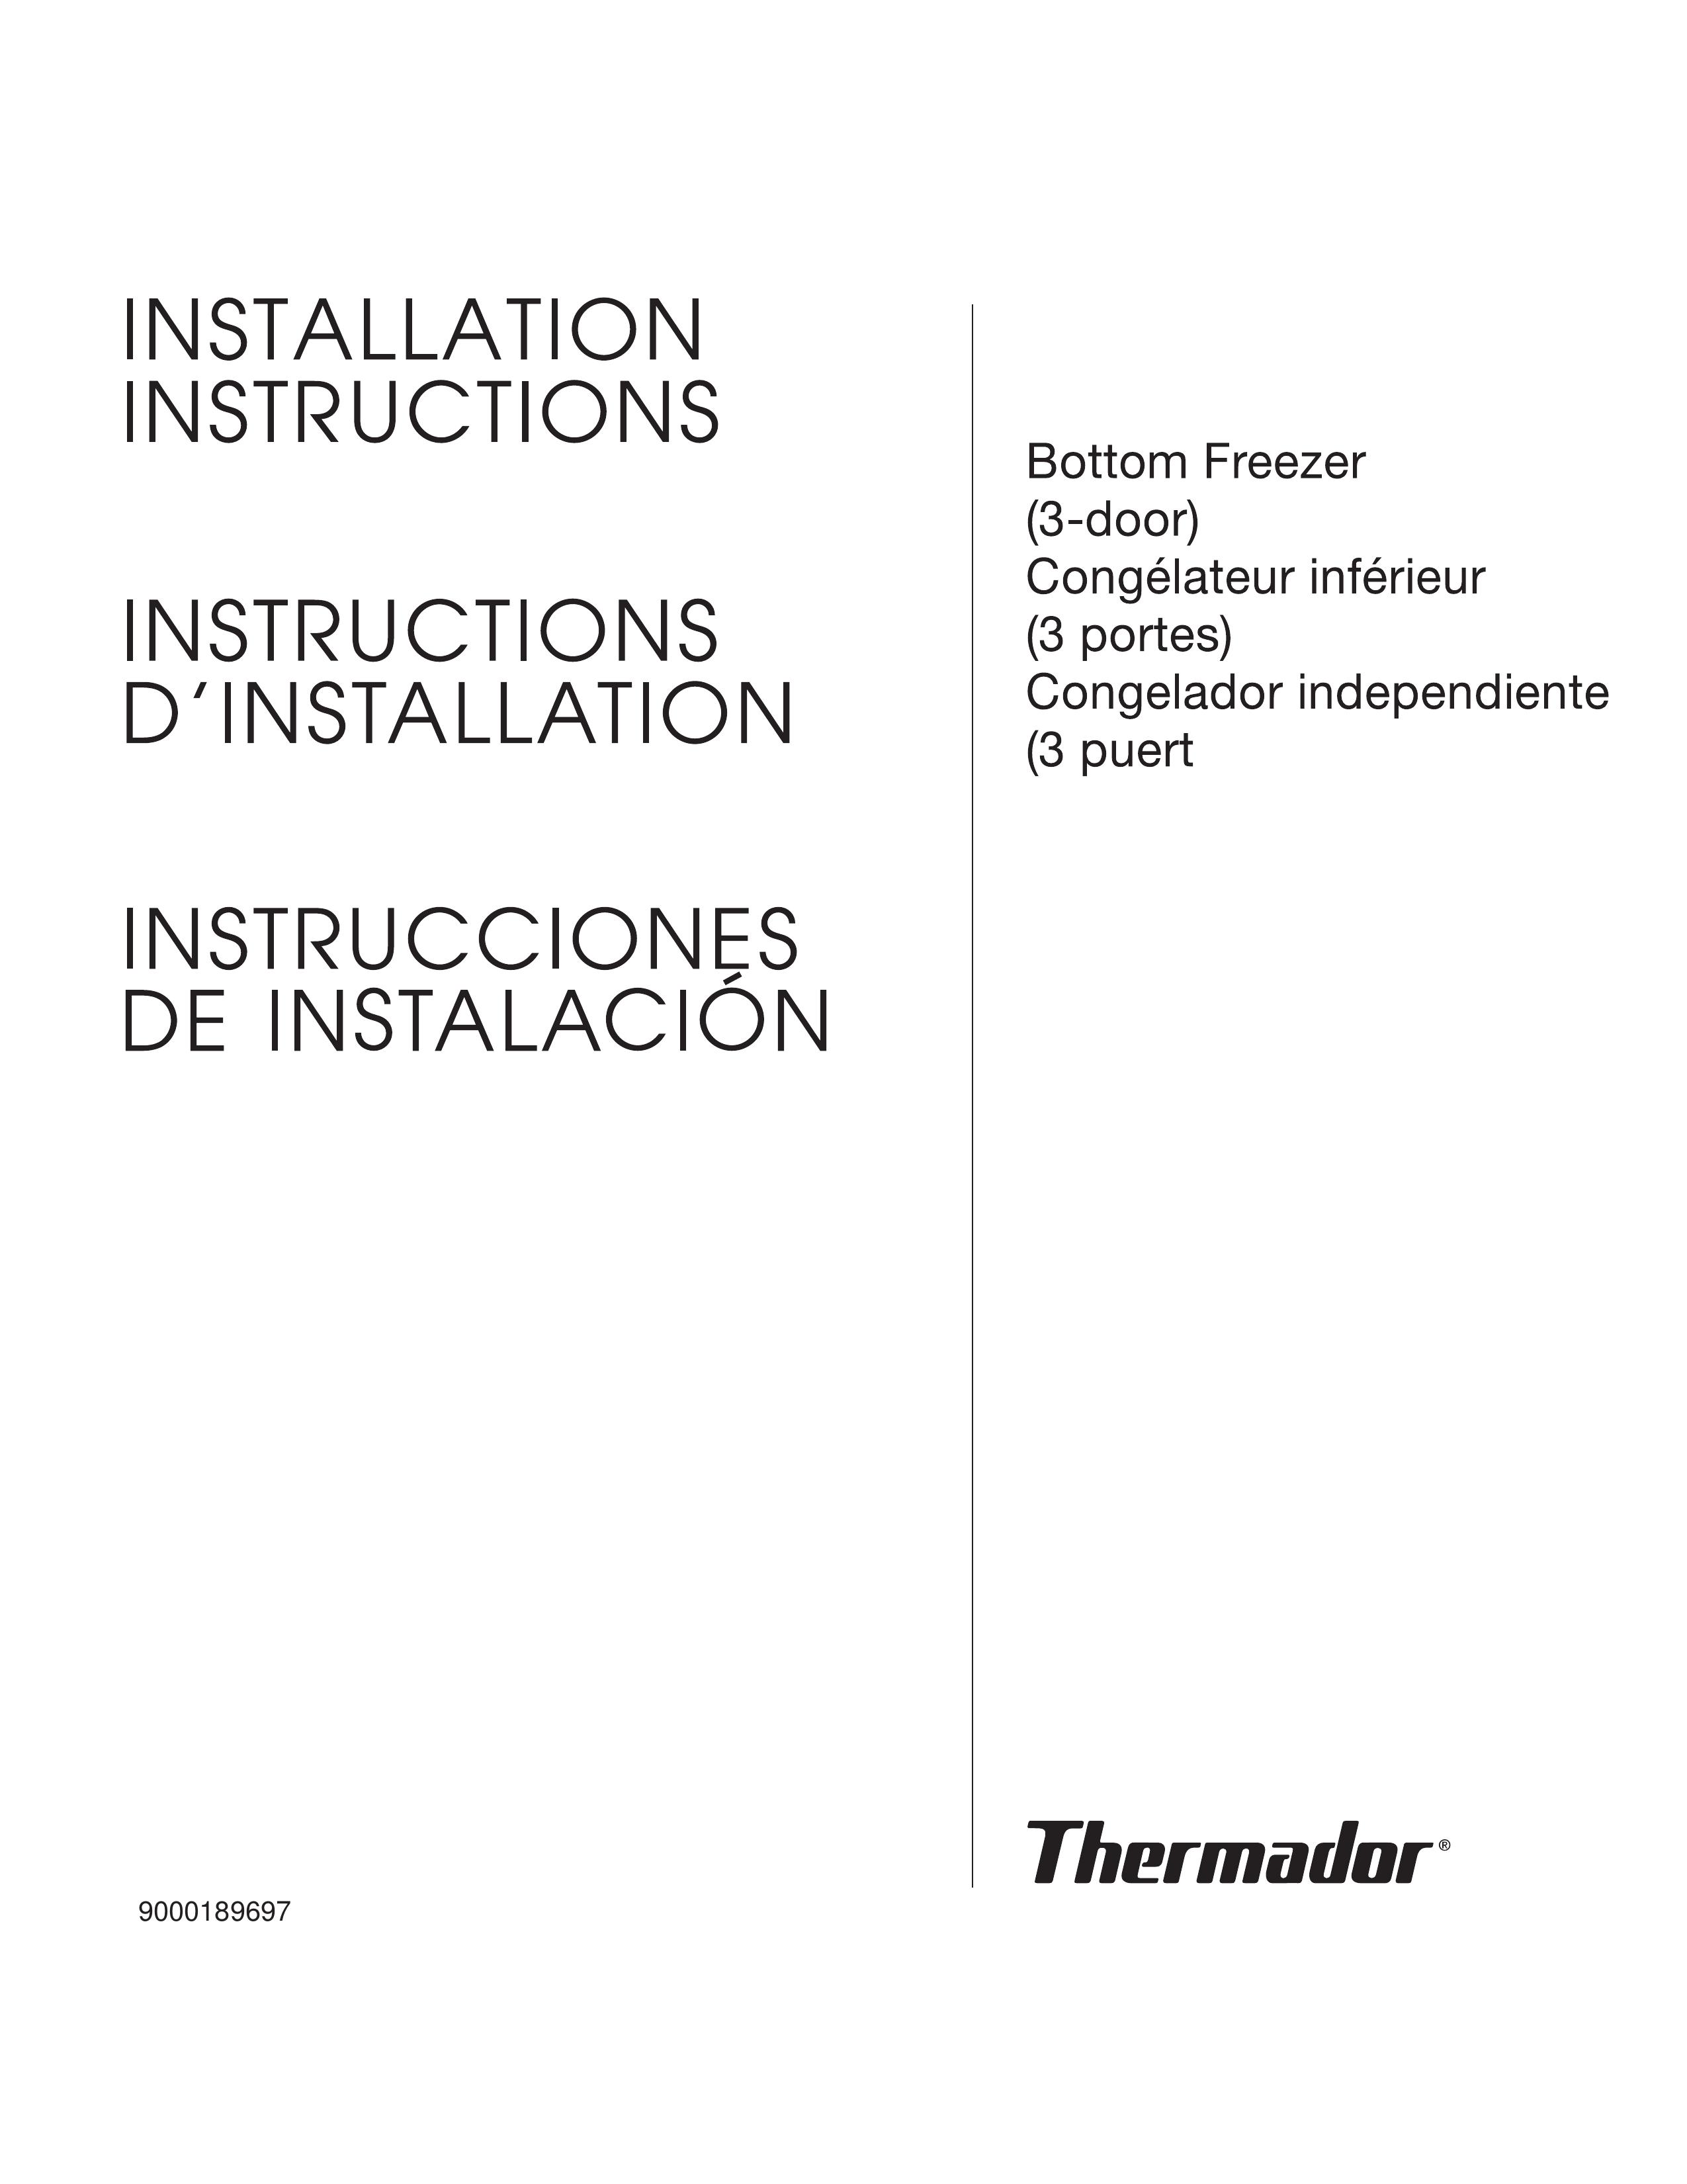 Thermador Bottom Freezer (3 Door) Refrigerator User Manual